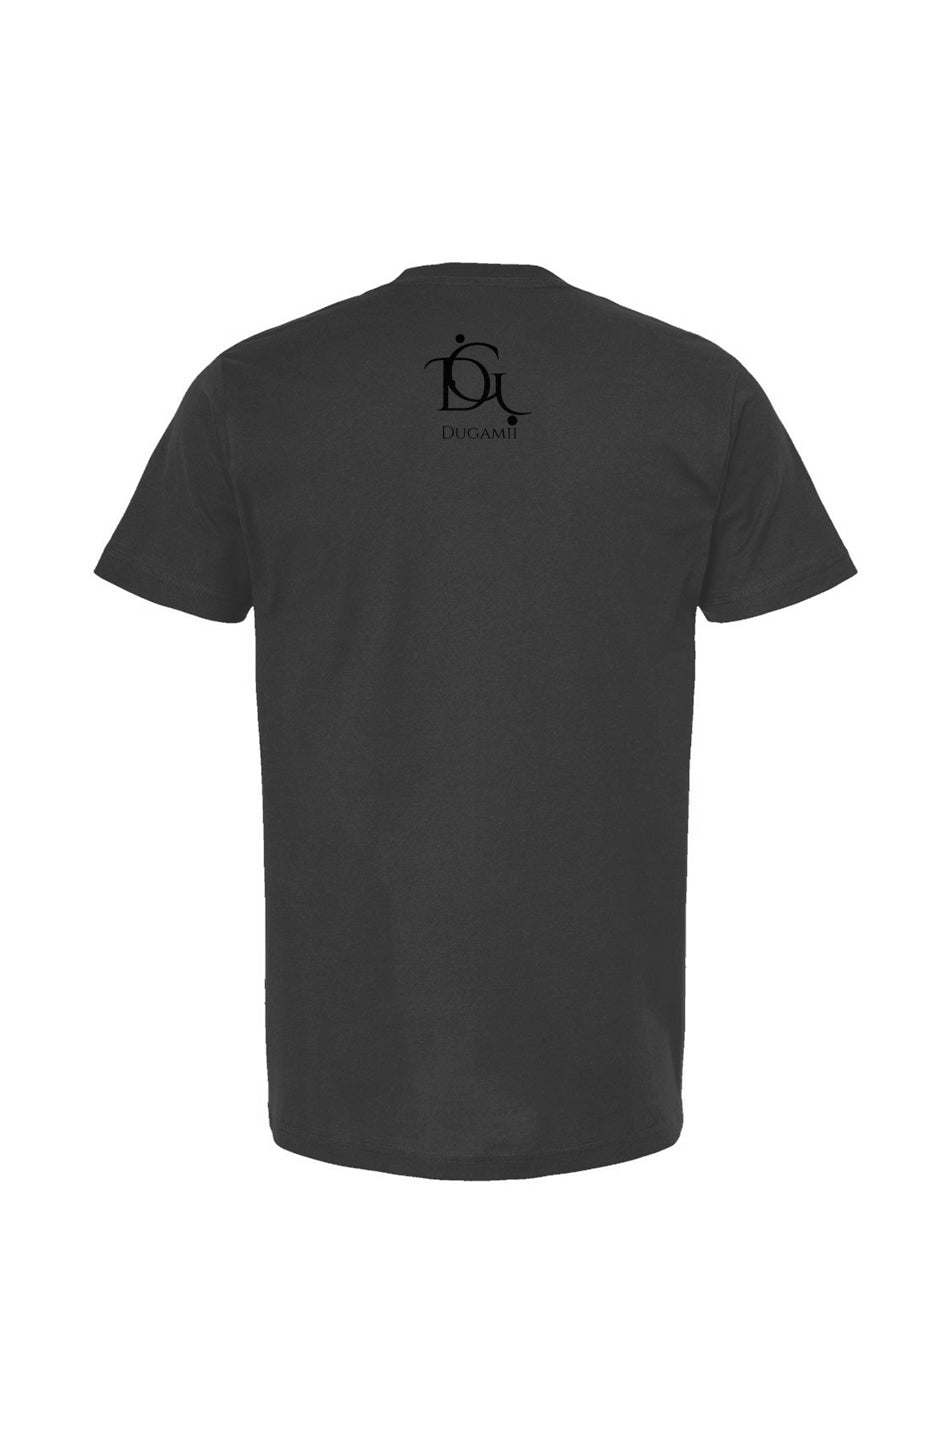 DuGamii Unisex "Brave Eagle" Coal T Shirt